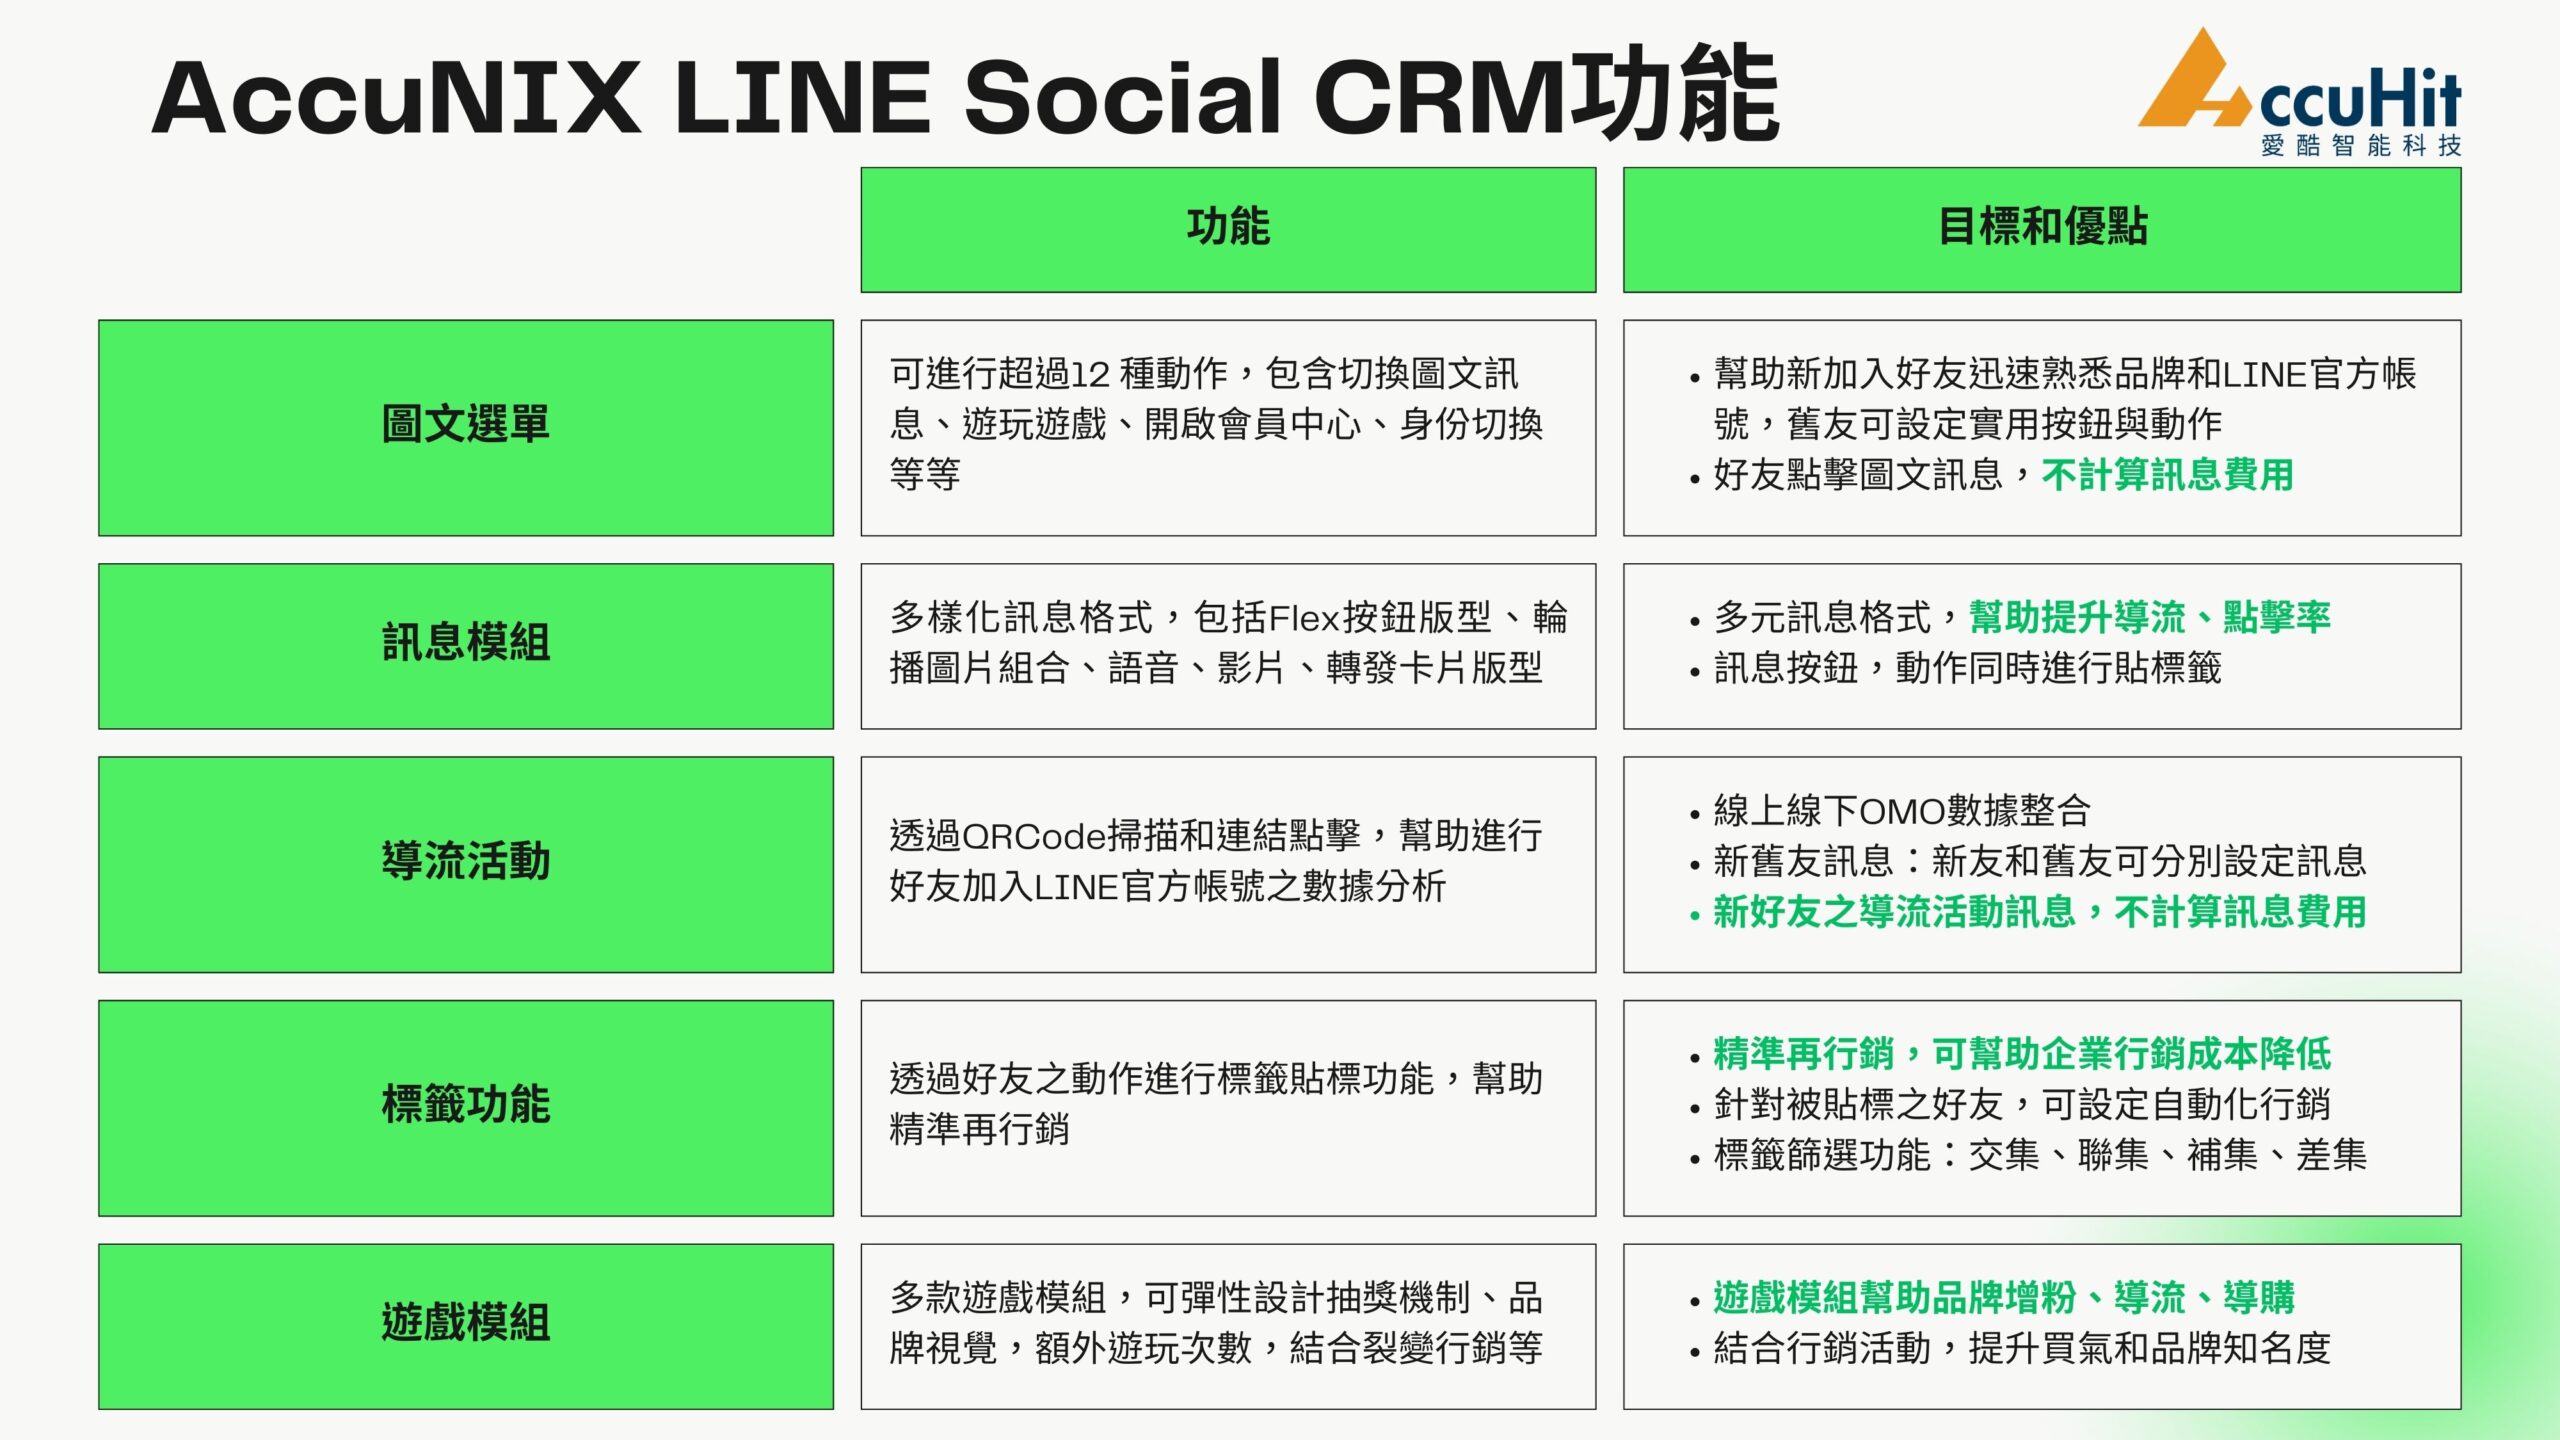 掌握AccuNIX LINE Social CRM各項功能重點，以及目標與優點，讓企業在LINE上也能做到極致的Social CRM，提升顧客終身價值、降低獲客成本，近一步幫助企業達到穩定的業績